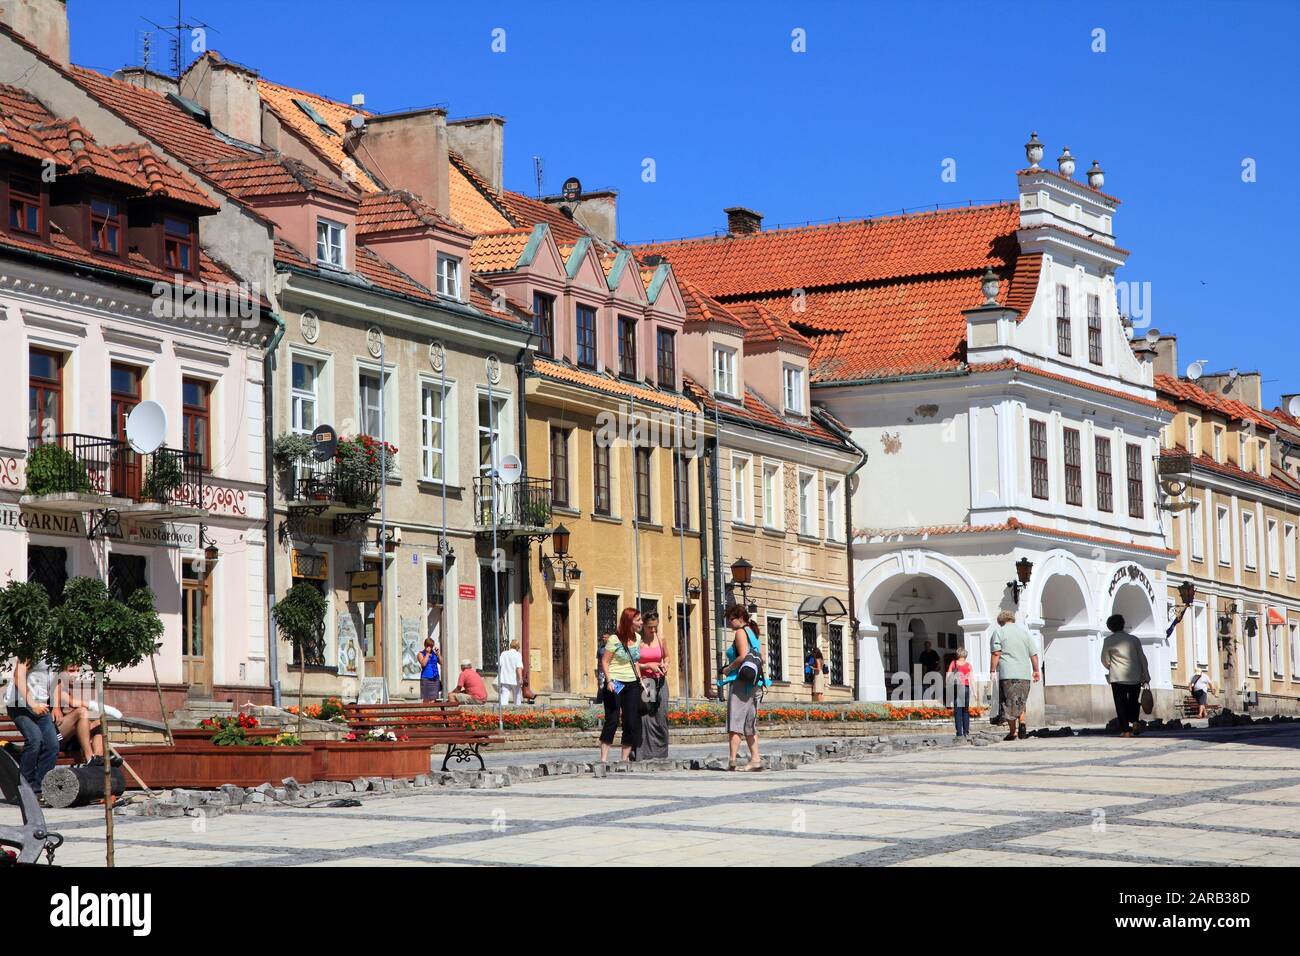 Sandomierz, POLOGNE - 9 AOÛT 2011: Les gens visitent la vieille ville de Sandomierz. Sandomierz est parmi les plus anciennes villes de Pologne, datant d'au moins 1227. Banque D'Images